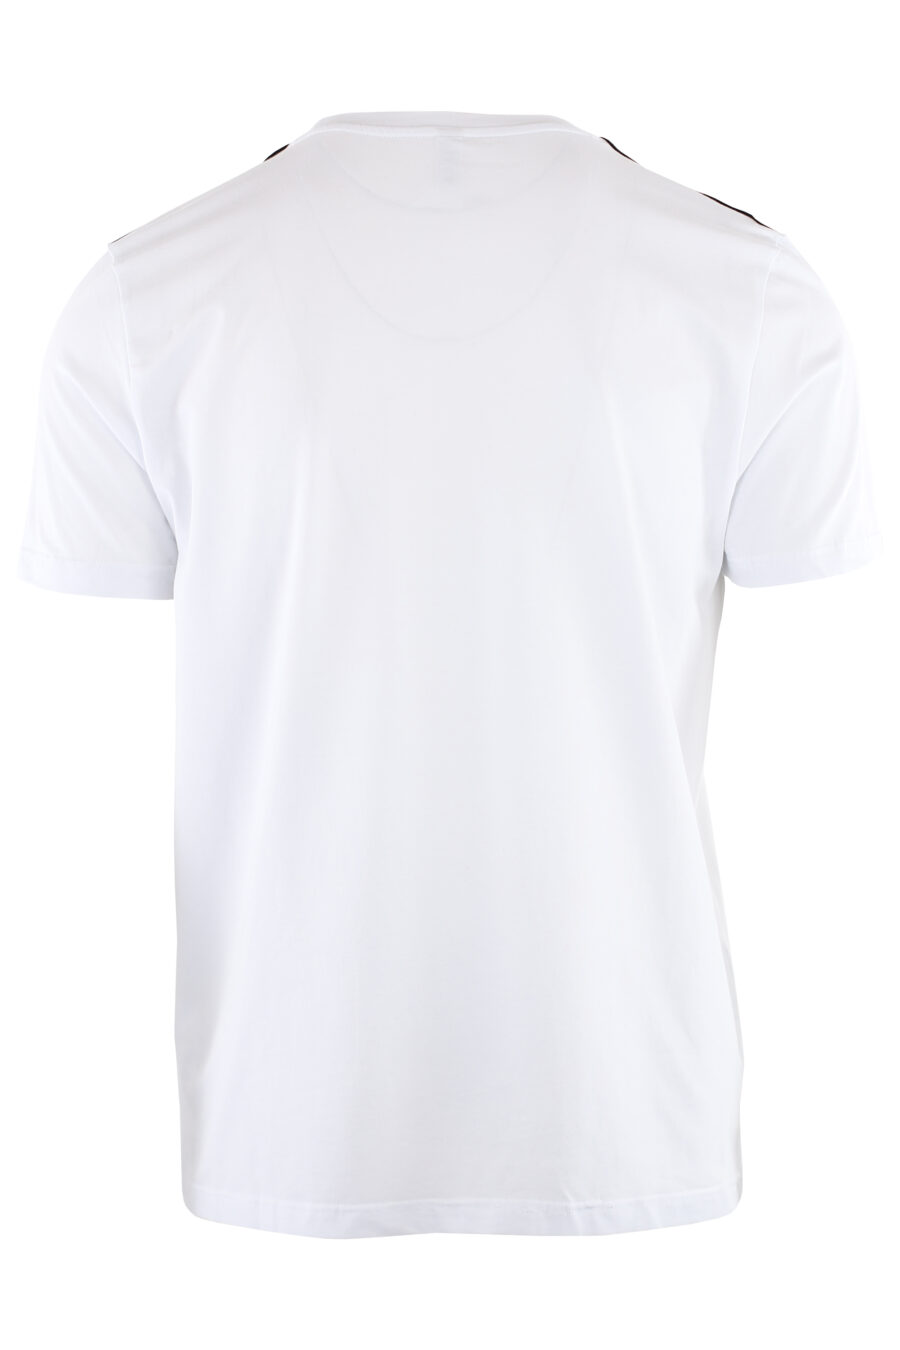 Conjunto de duas T-shirts brancas com fita com logótipo nos ombros - IMG 7324